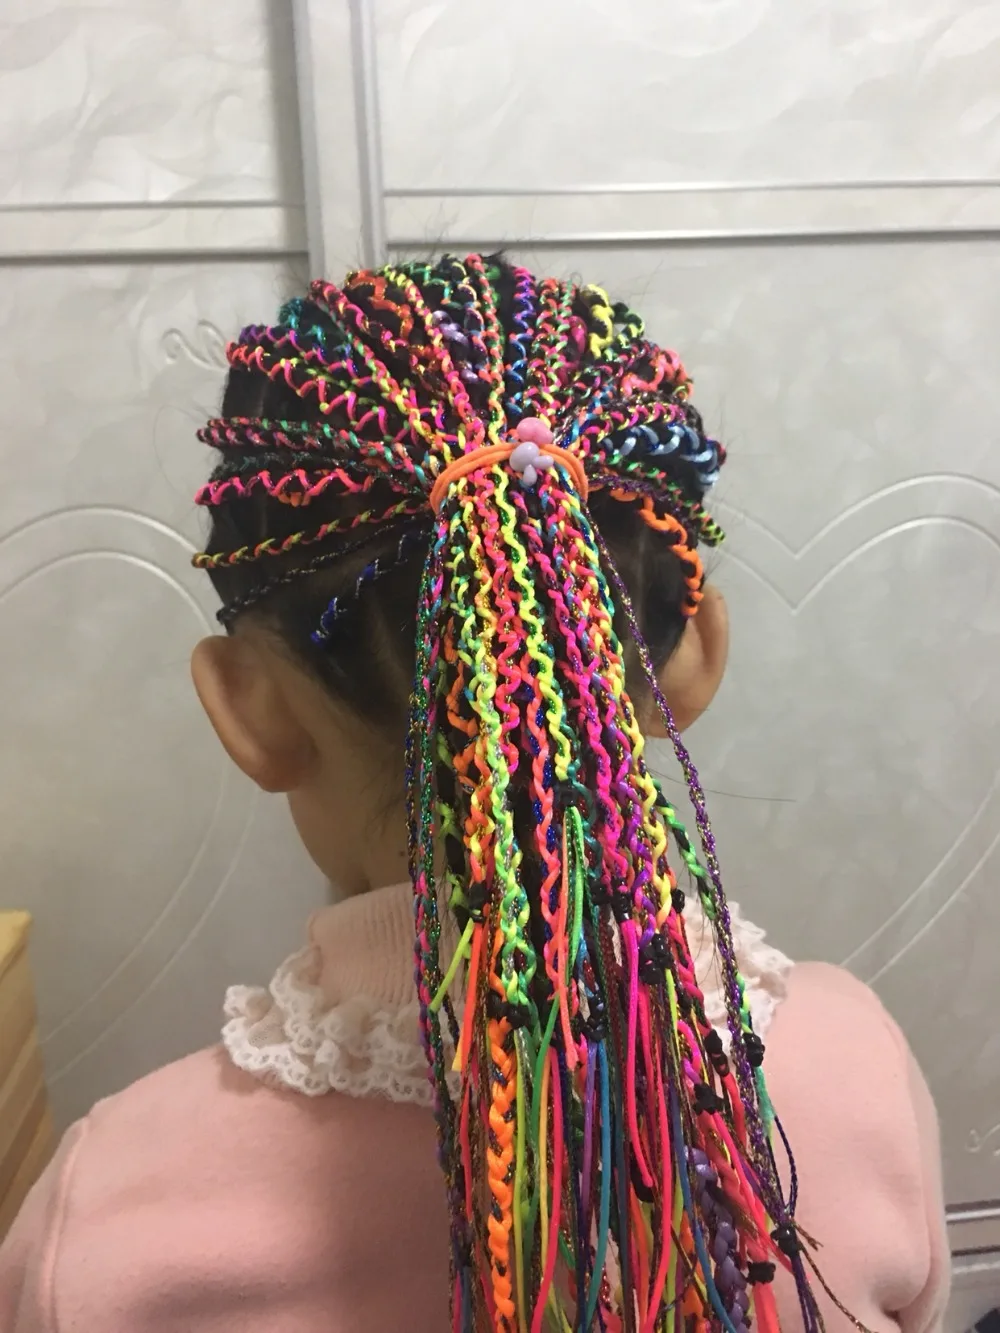 30 шт./лот, радуга, 90 см, инструмент для укладки волос, шелковый шнур, для вязания волос, плетеная веревка, повязка на голову, аксессуары для волос для девочек